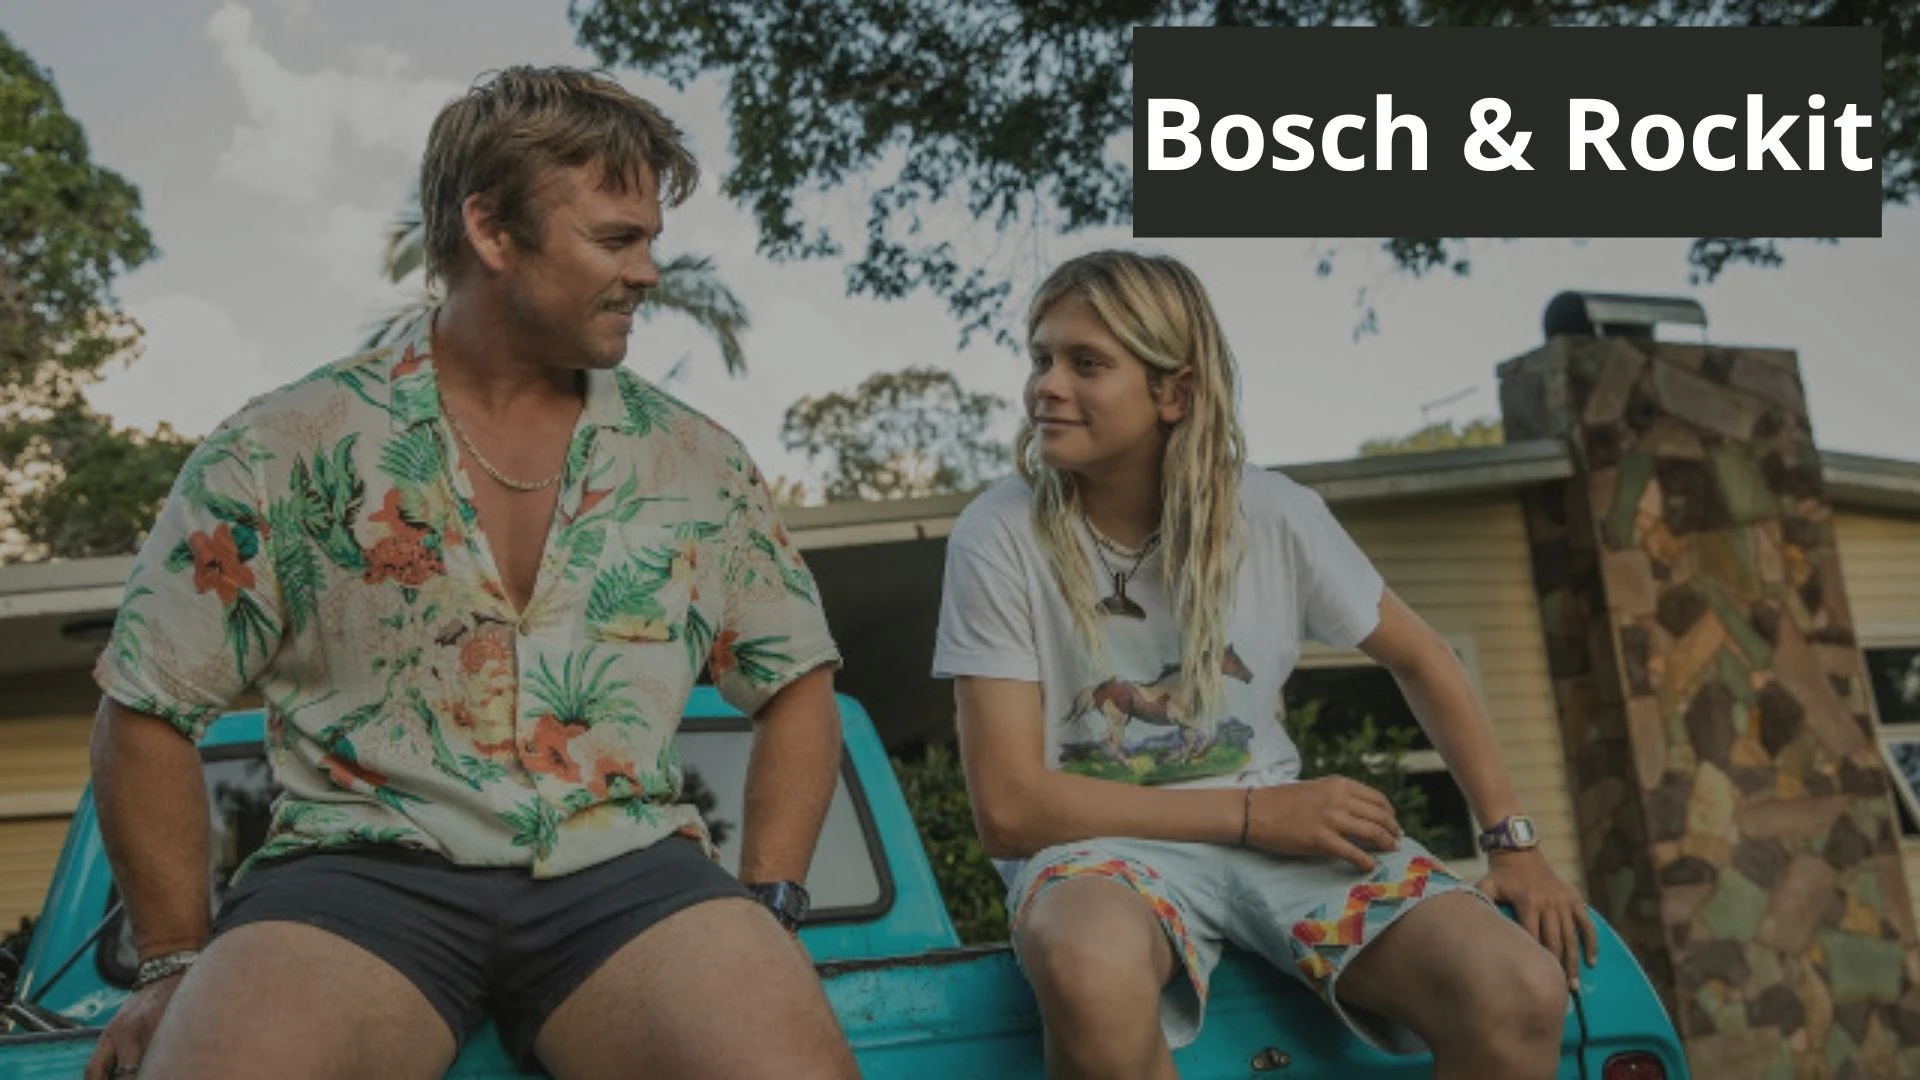 Bosch & Rockit Parents Guide